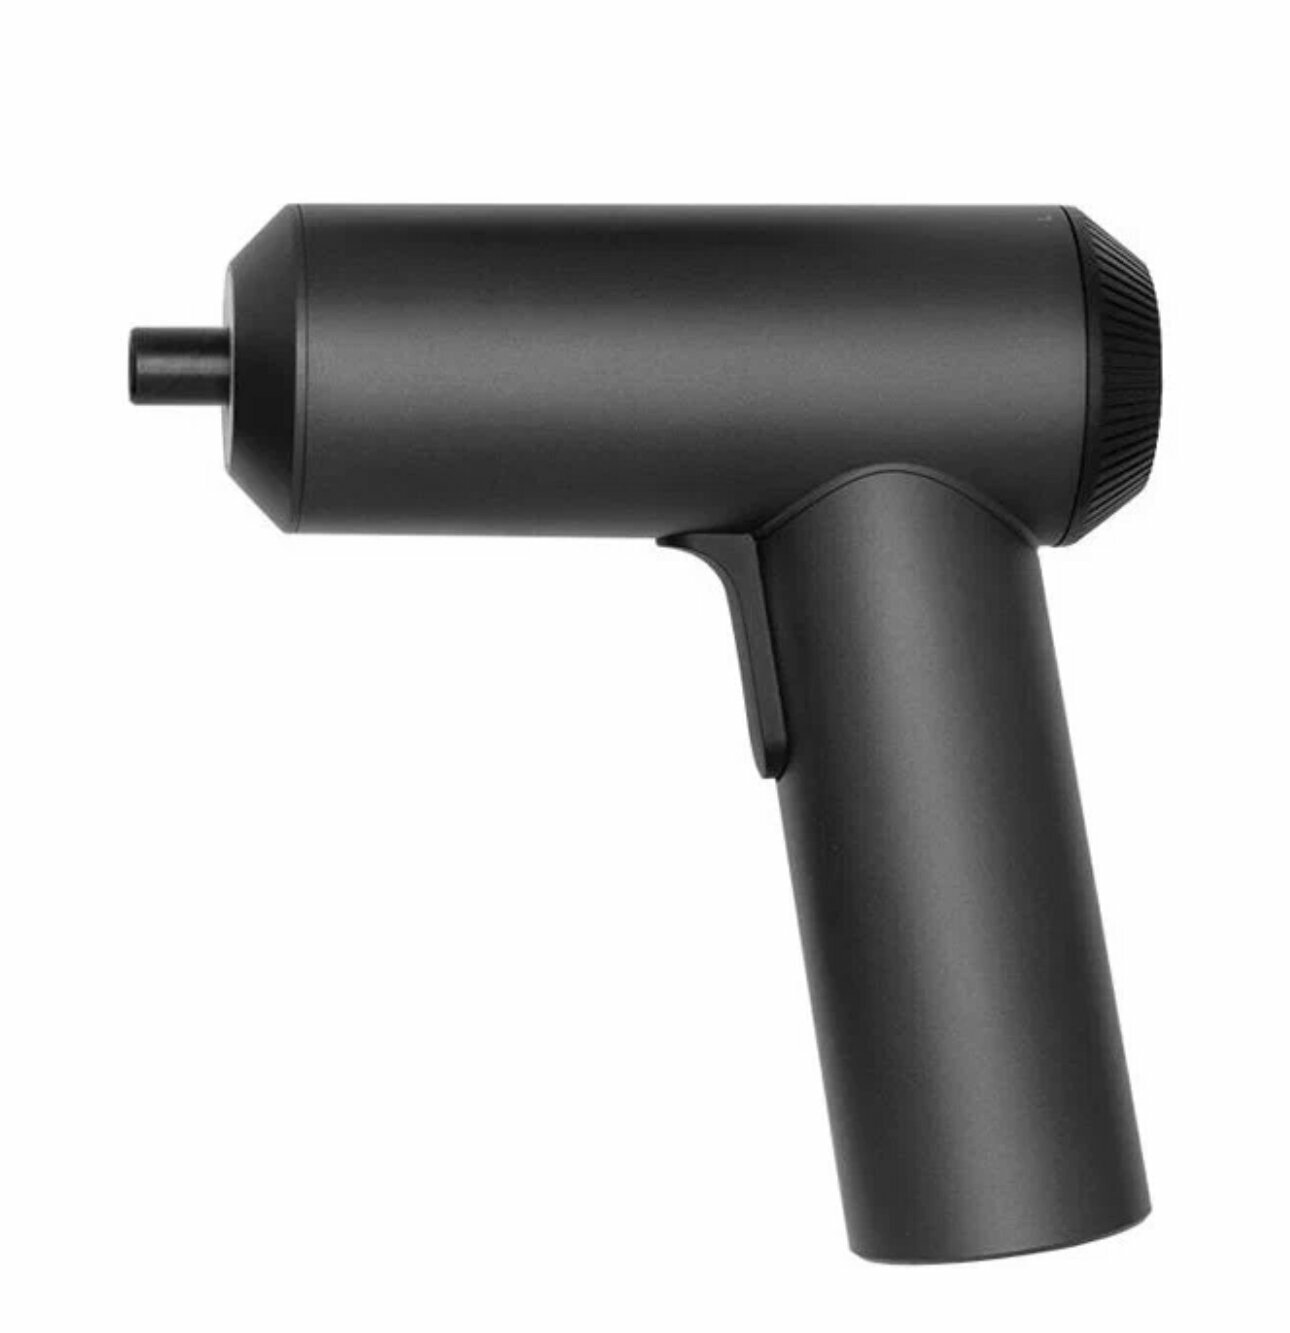 Аккумуляторная отвертка Xiaomi MiJia Electric Screwdriver Gun черный